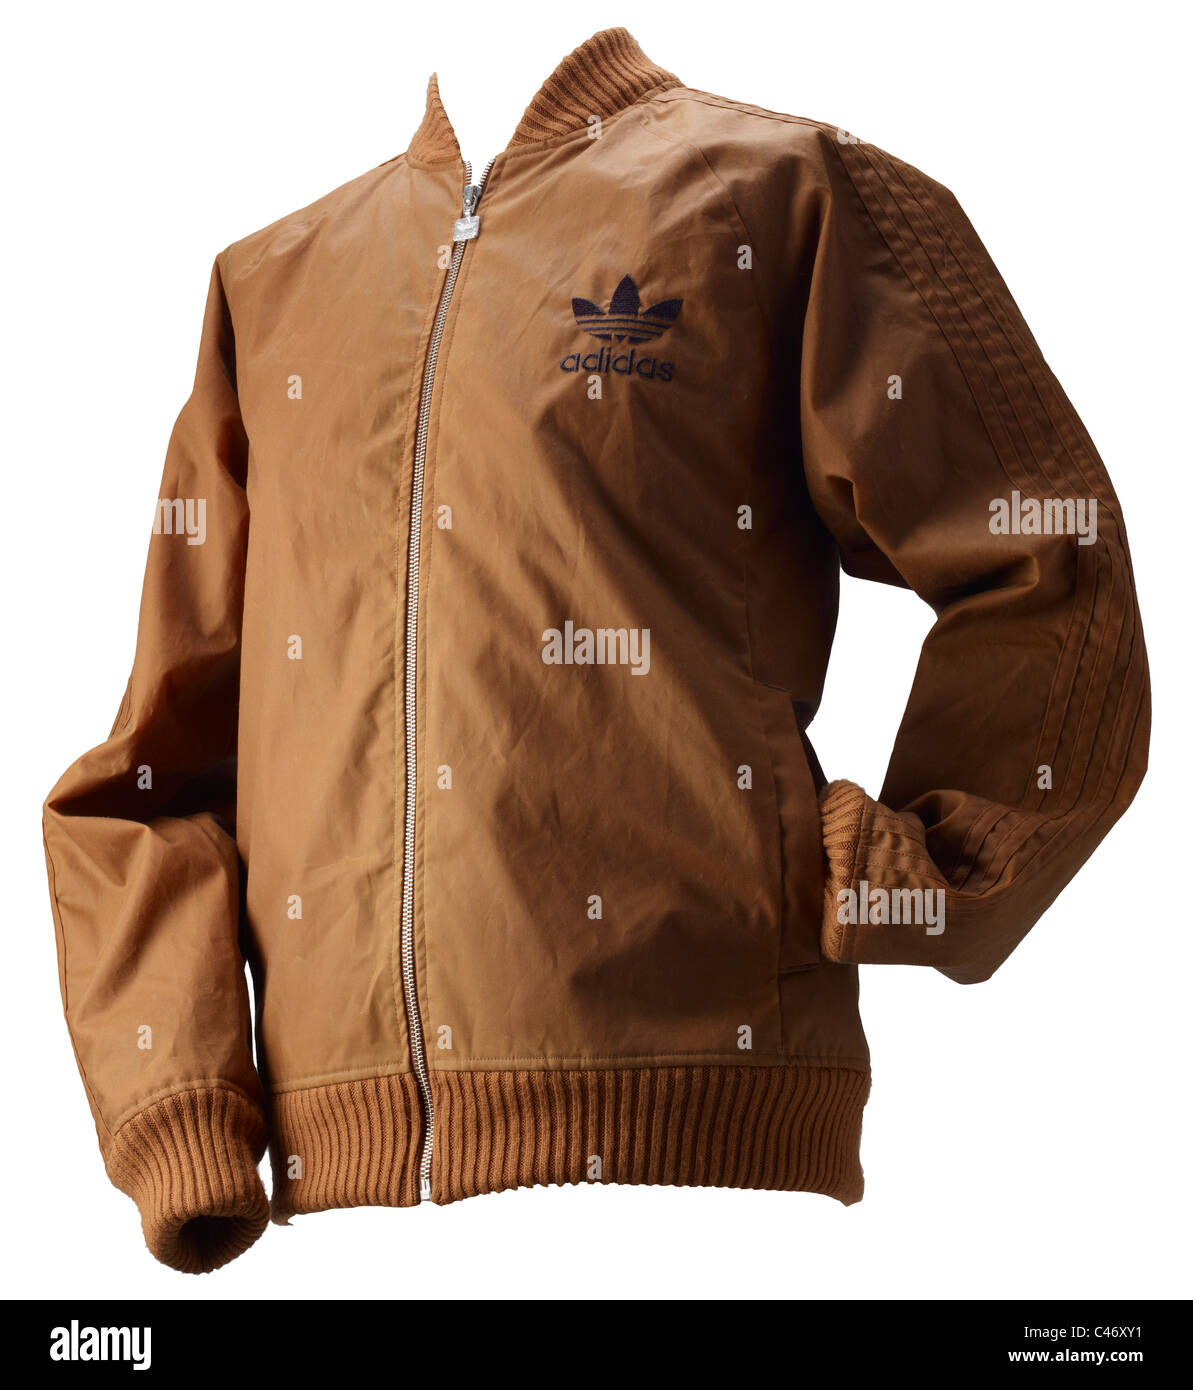 Adidas jacket -Fotos und -Bildmaterial in hoher Auflösung – Alamy